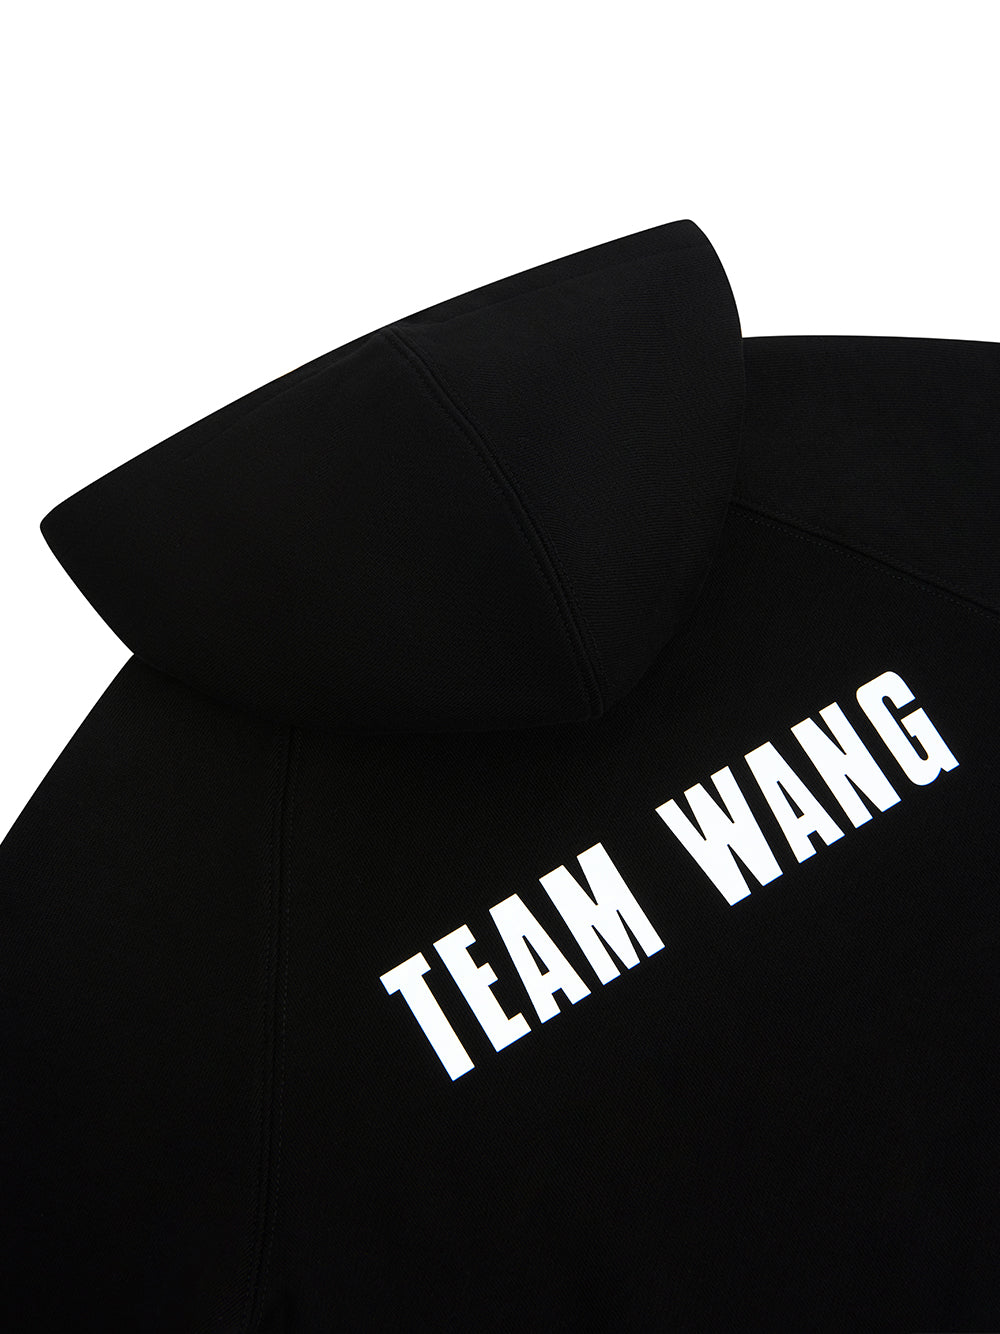 Team-Wang-Design-THE-ORIGINAL-1-KIDS-Hoodie-Black-4